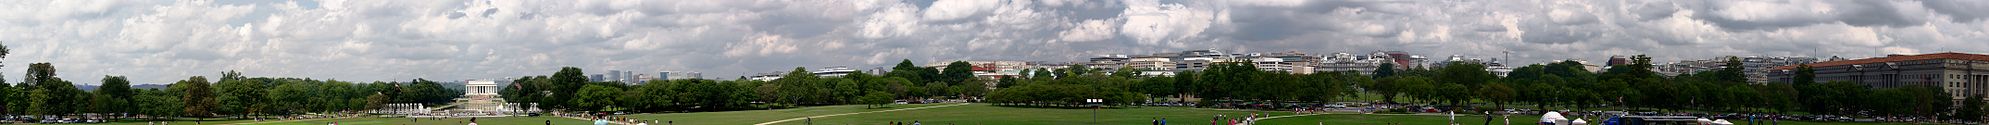 Панорамный снимок центра города от монумента Вашингтона. Панорама охватывает направления от юго-запада до северо-востока. Можно увидеть мемориал Линкольна и Белый дом